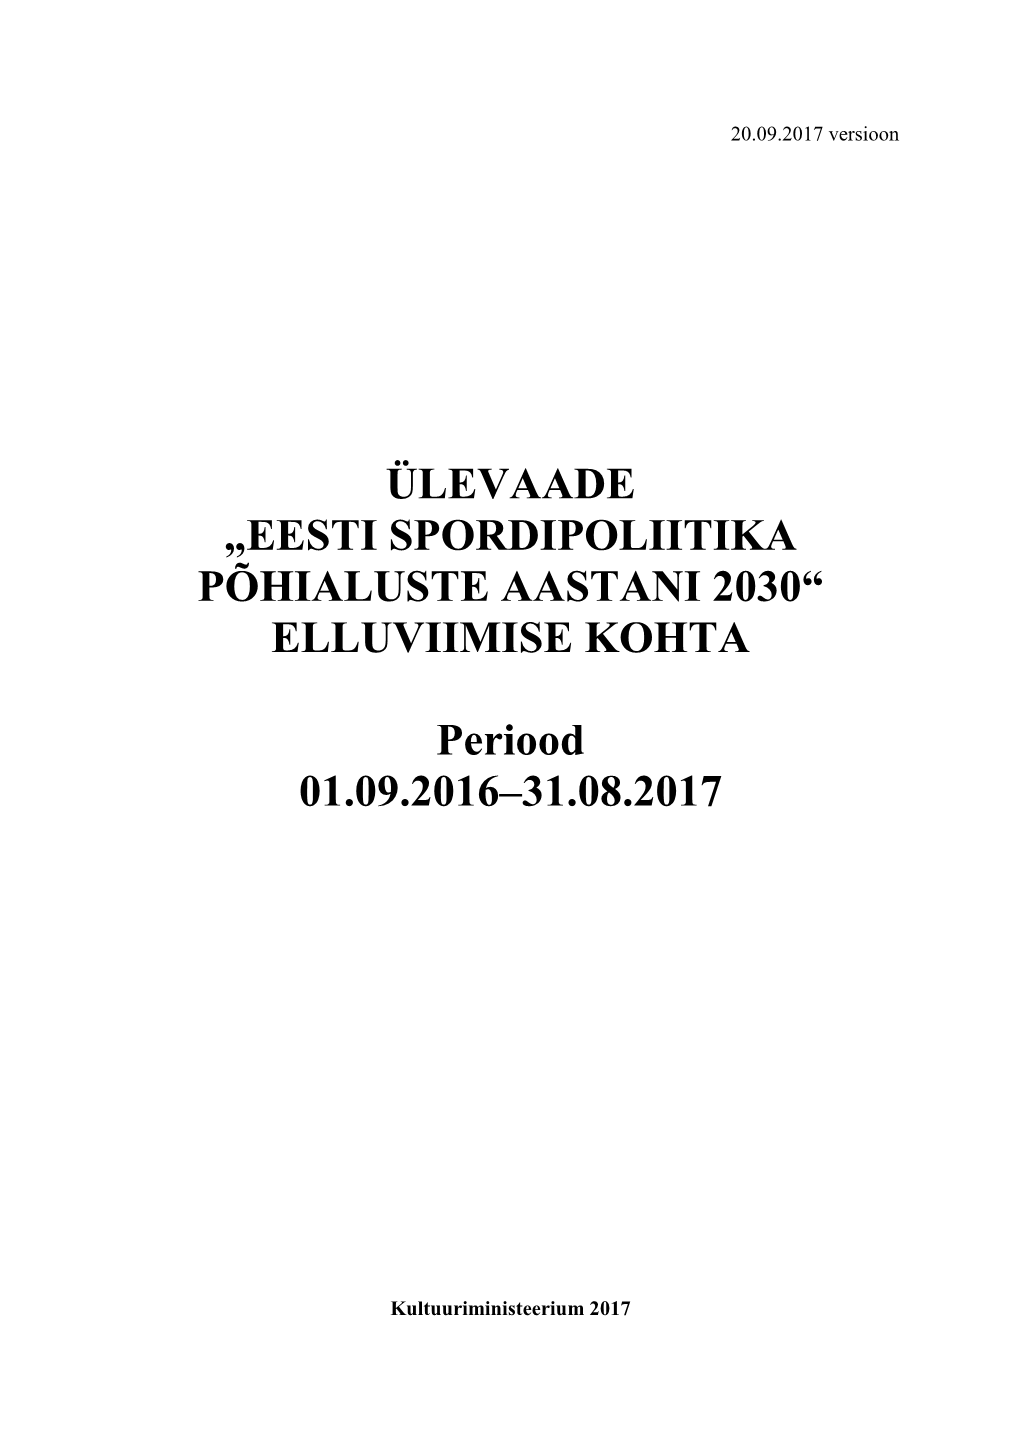 Eesti Spordipoliitika Põhialuste Aastani 2030“ Elluviimise Kohta